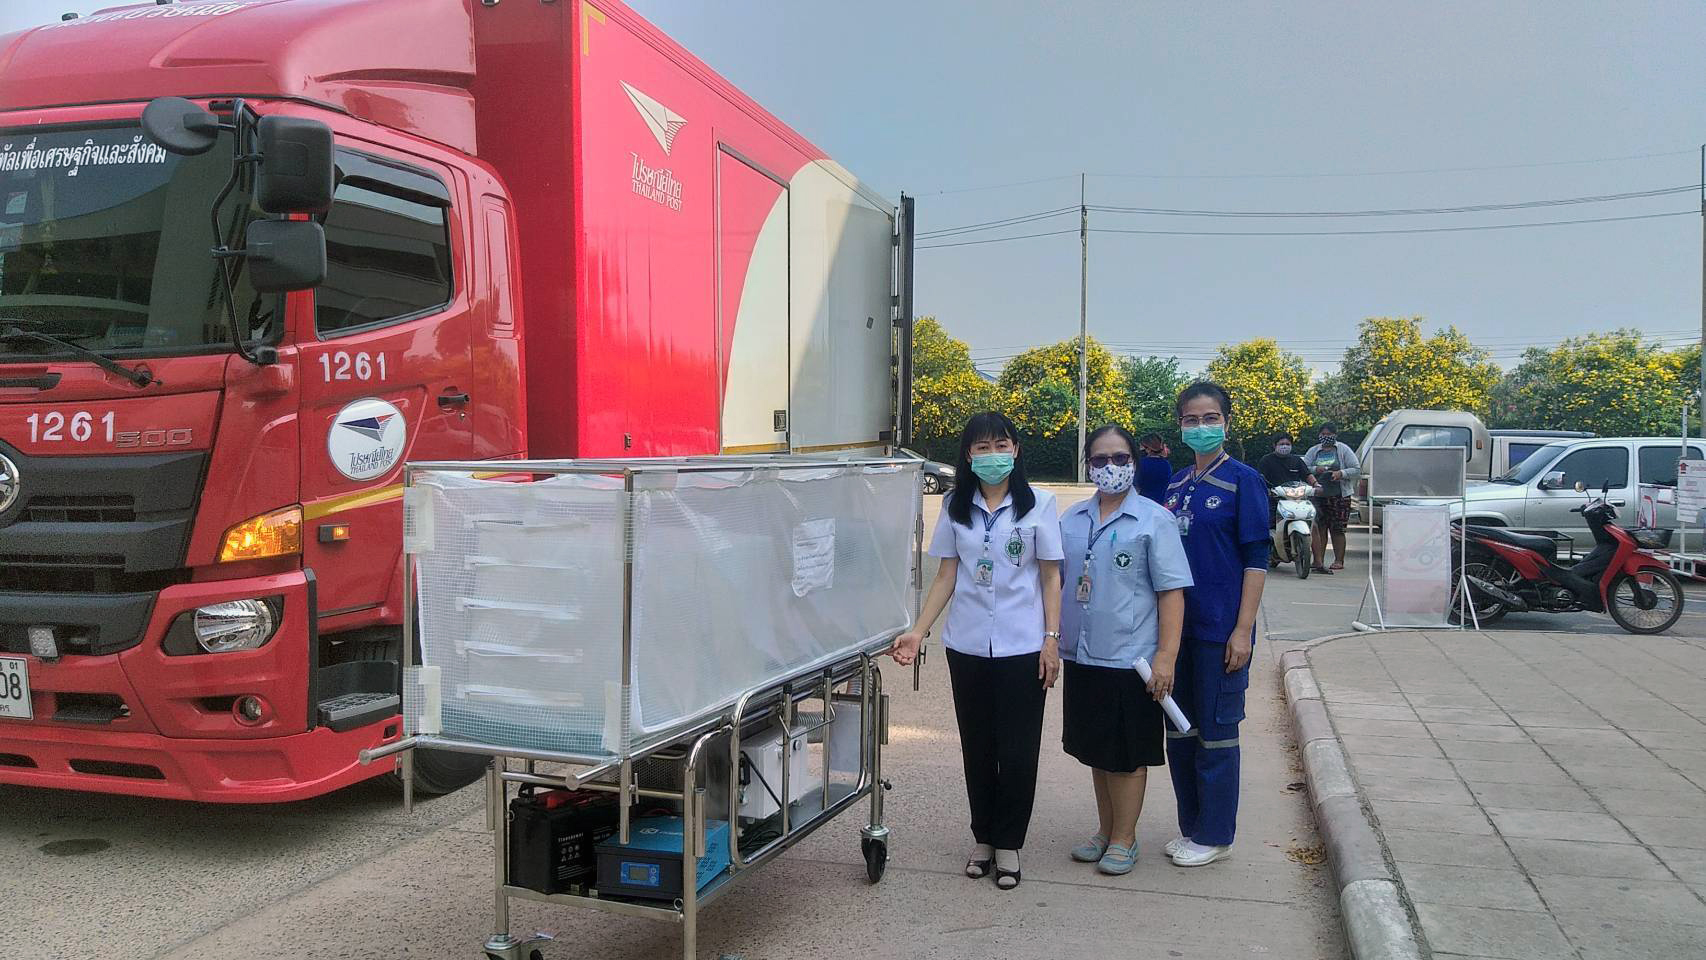 ปรษณีย์ไทย ส่งต่อน้ำใจคนไทย กว่า 3 แสน กก. เผย หน้ากากอนามัย ชุดป้องกัน PPE เป็นสิ่งที่บุคลากรทางการแพทย์ ต้องการสูงสุด